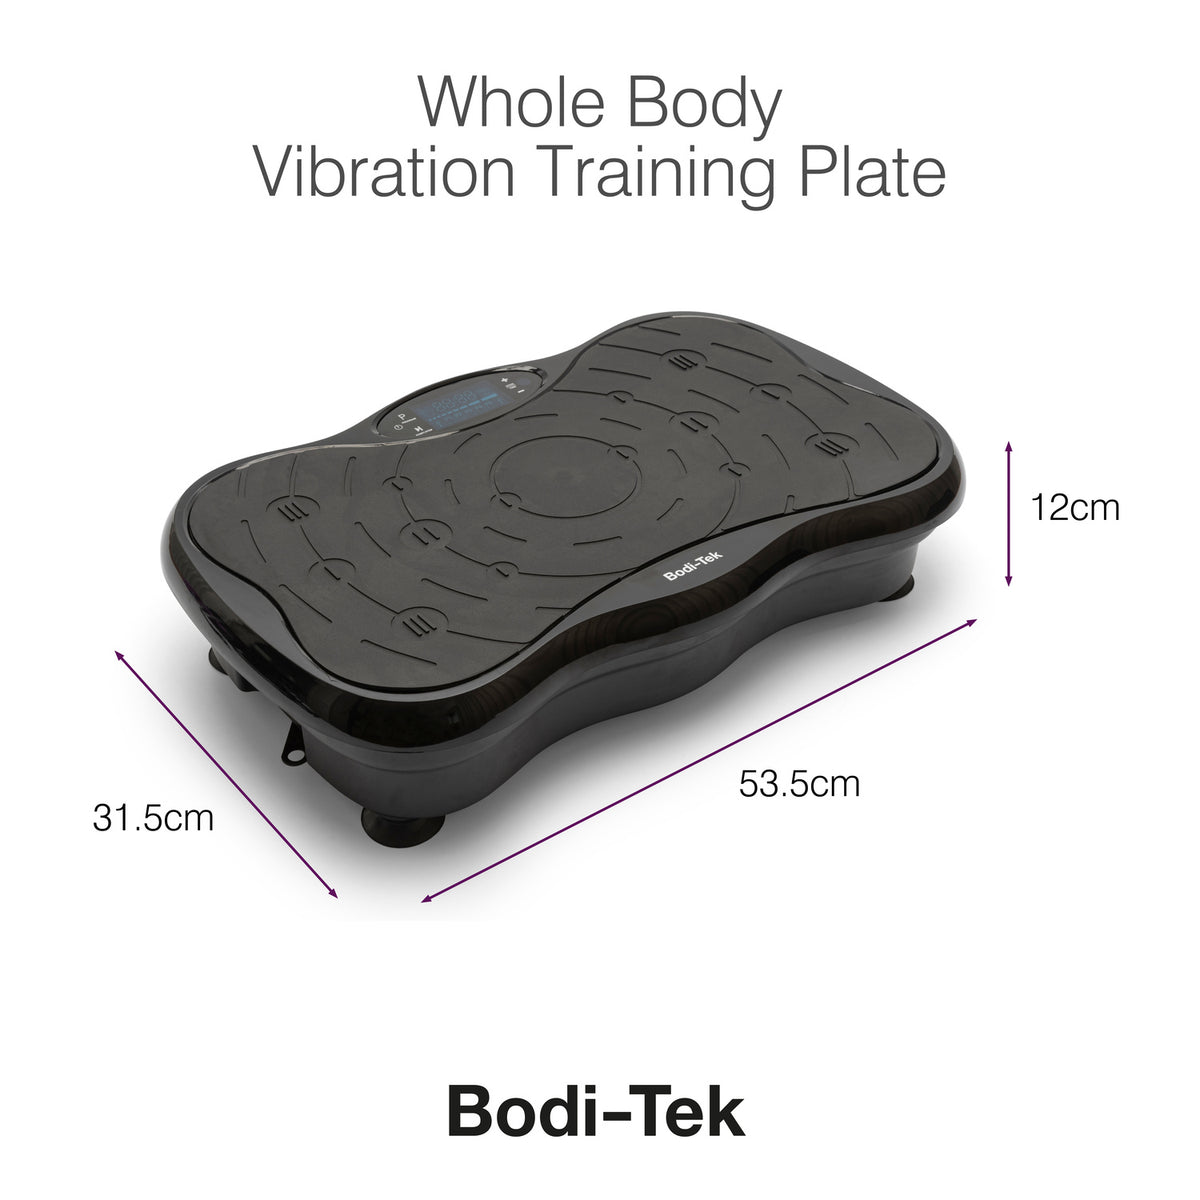 Whole Body Vibration Training Plate - Bodi-Tek